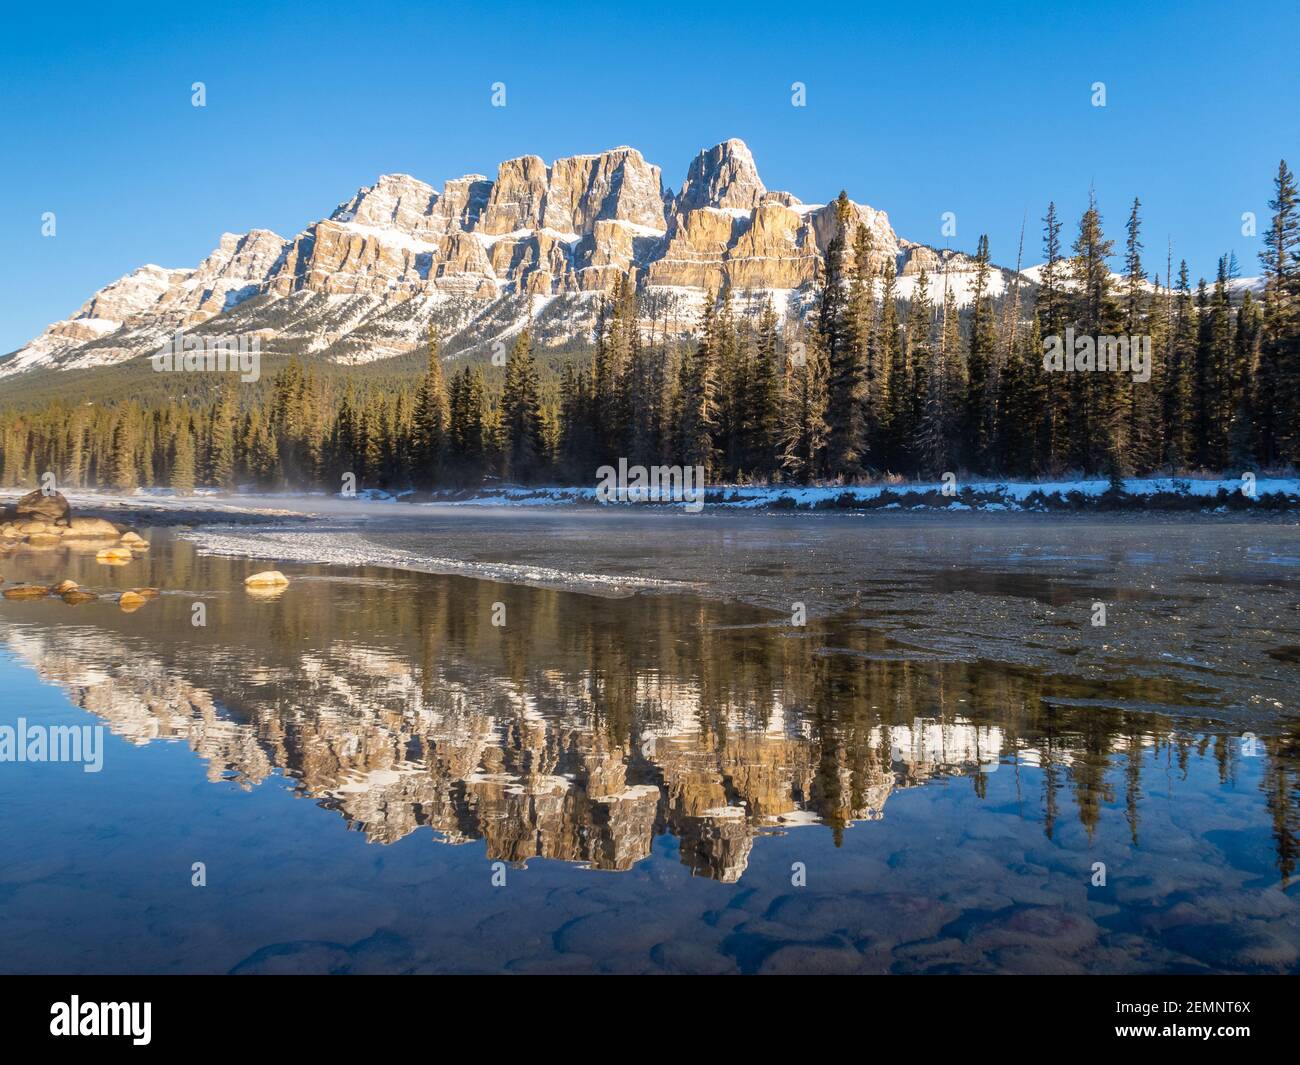 Wunderschöne Aussicht auf Castle Mountain, gelegen im Banff National Park in den Kanadischen Rockies Stockfoto